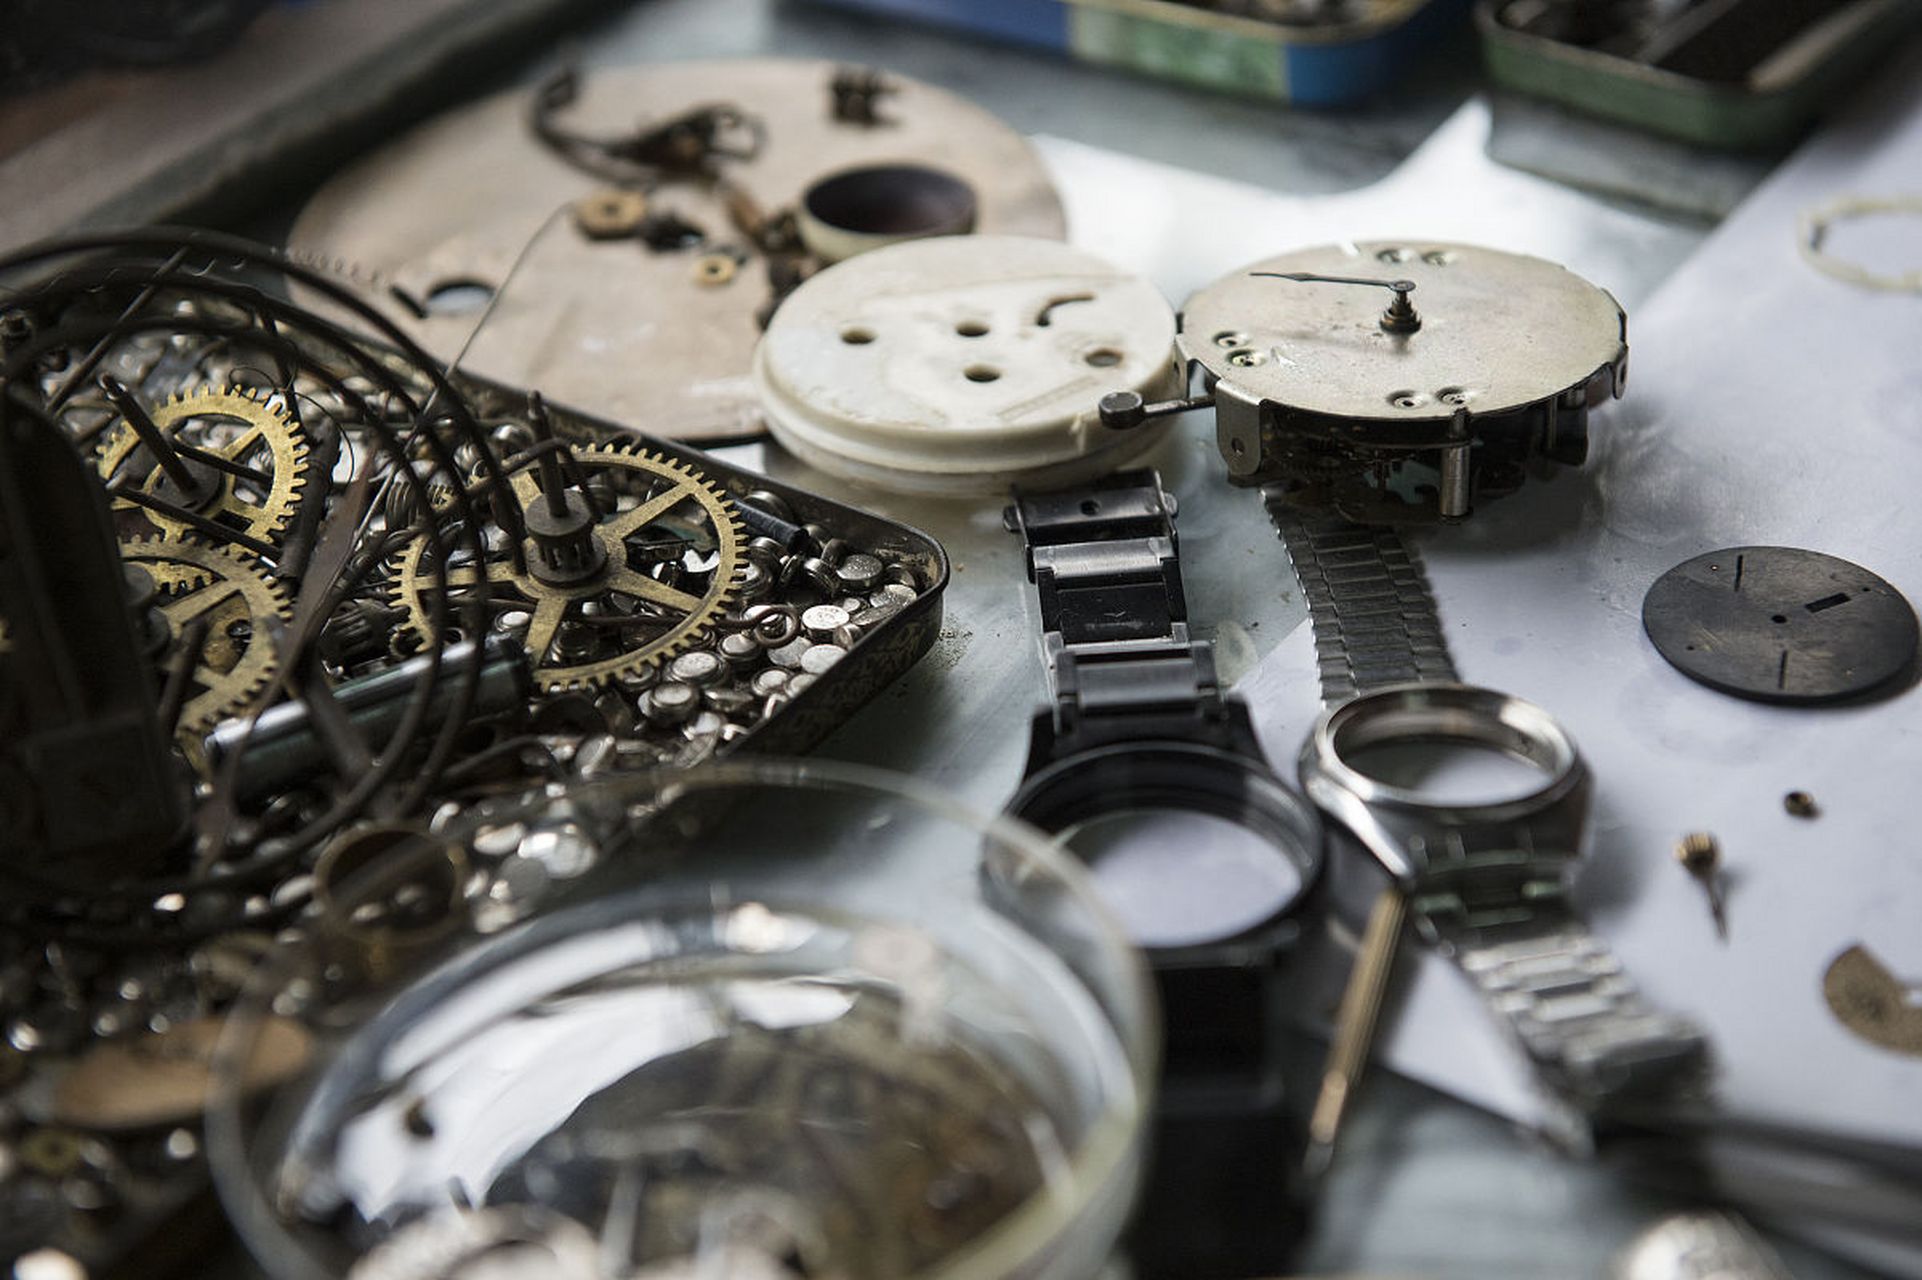 亨得利手表维修保养服务中心,一站式解决手表疑难杂症!